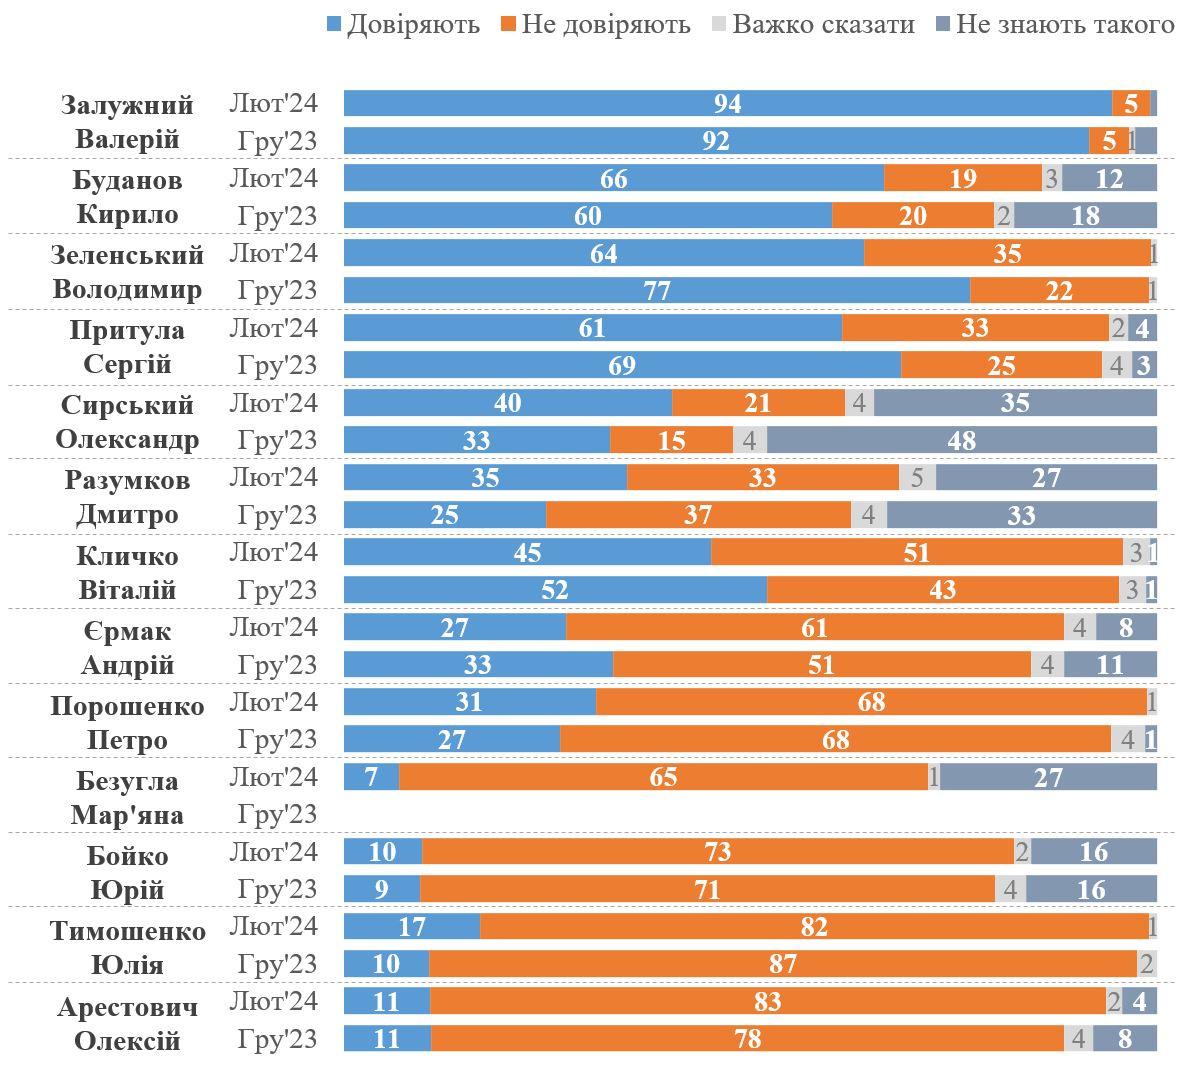 Динаміка довіри до українських діячів